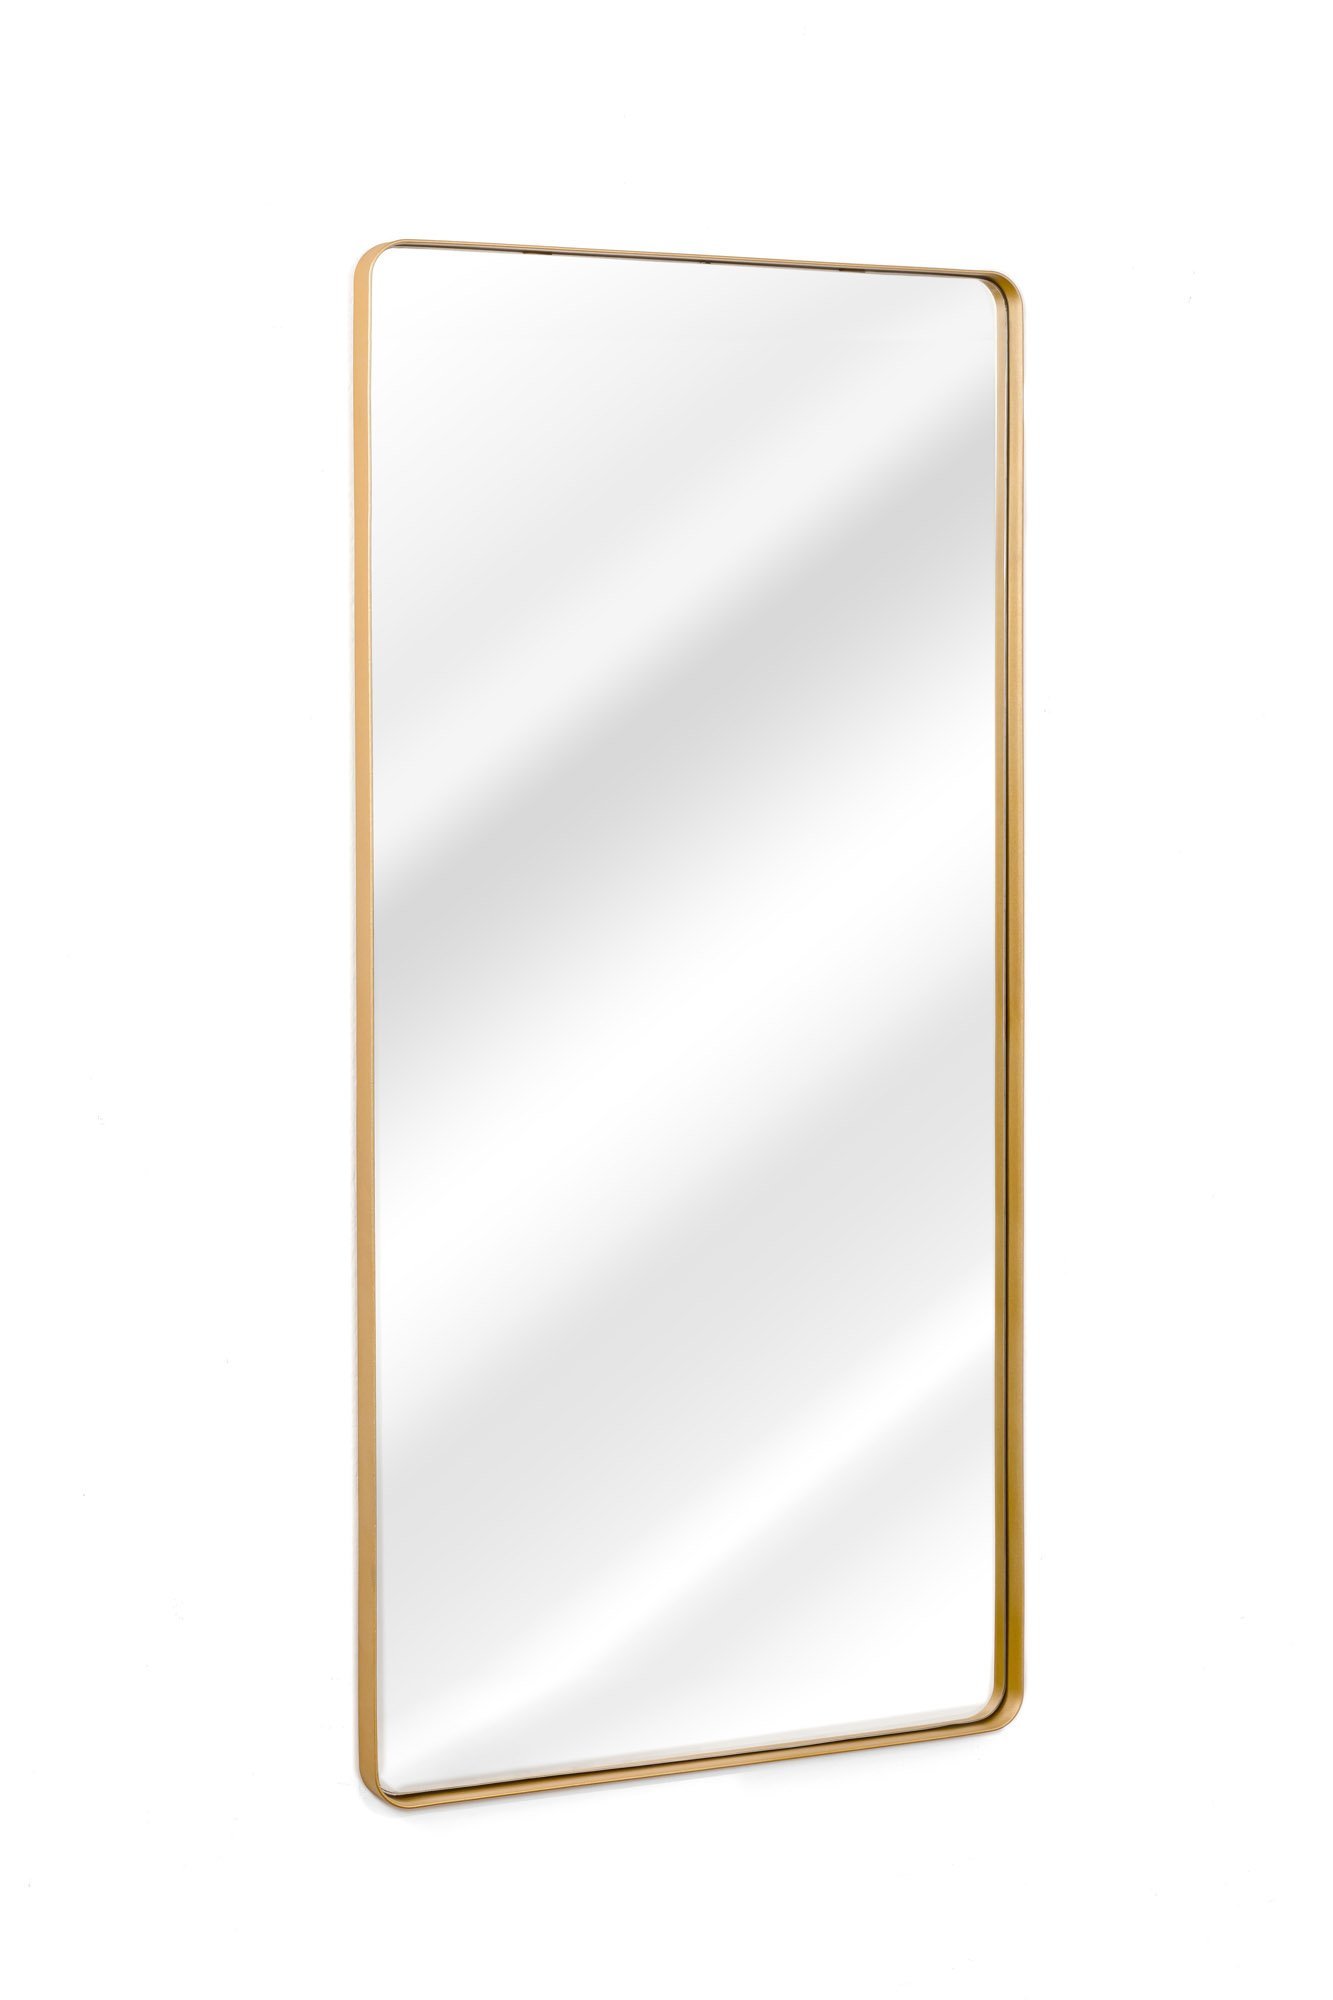 Espelho Grande Corpo Inteiro Retangular com Moldura em Metal Industrial 120 X 60 Cm Dourado - 4